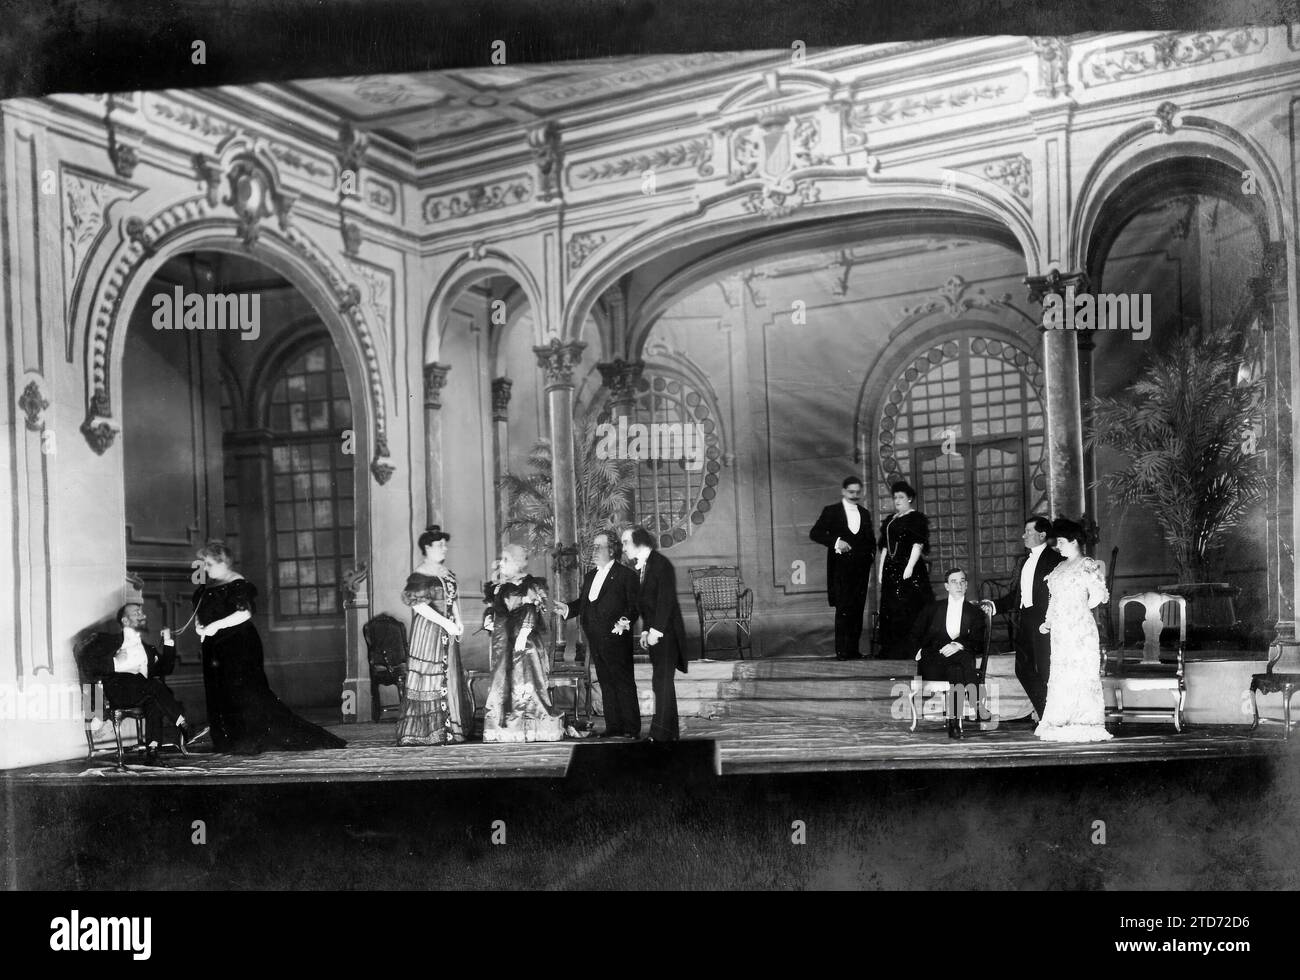 Madrid, 31/03/1906. Istantanea di una scena del terzo atto della commedia "la principessa bambina", scritta da Don Jacinto Benavente. Crediti: Album / Archivo ABC Foto Stock